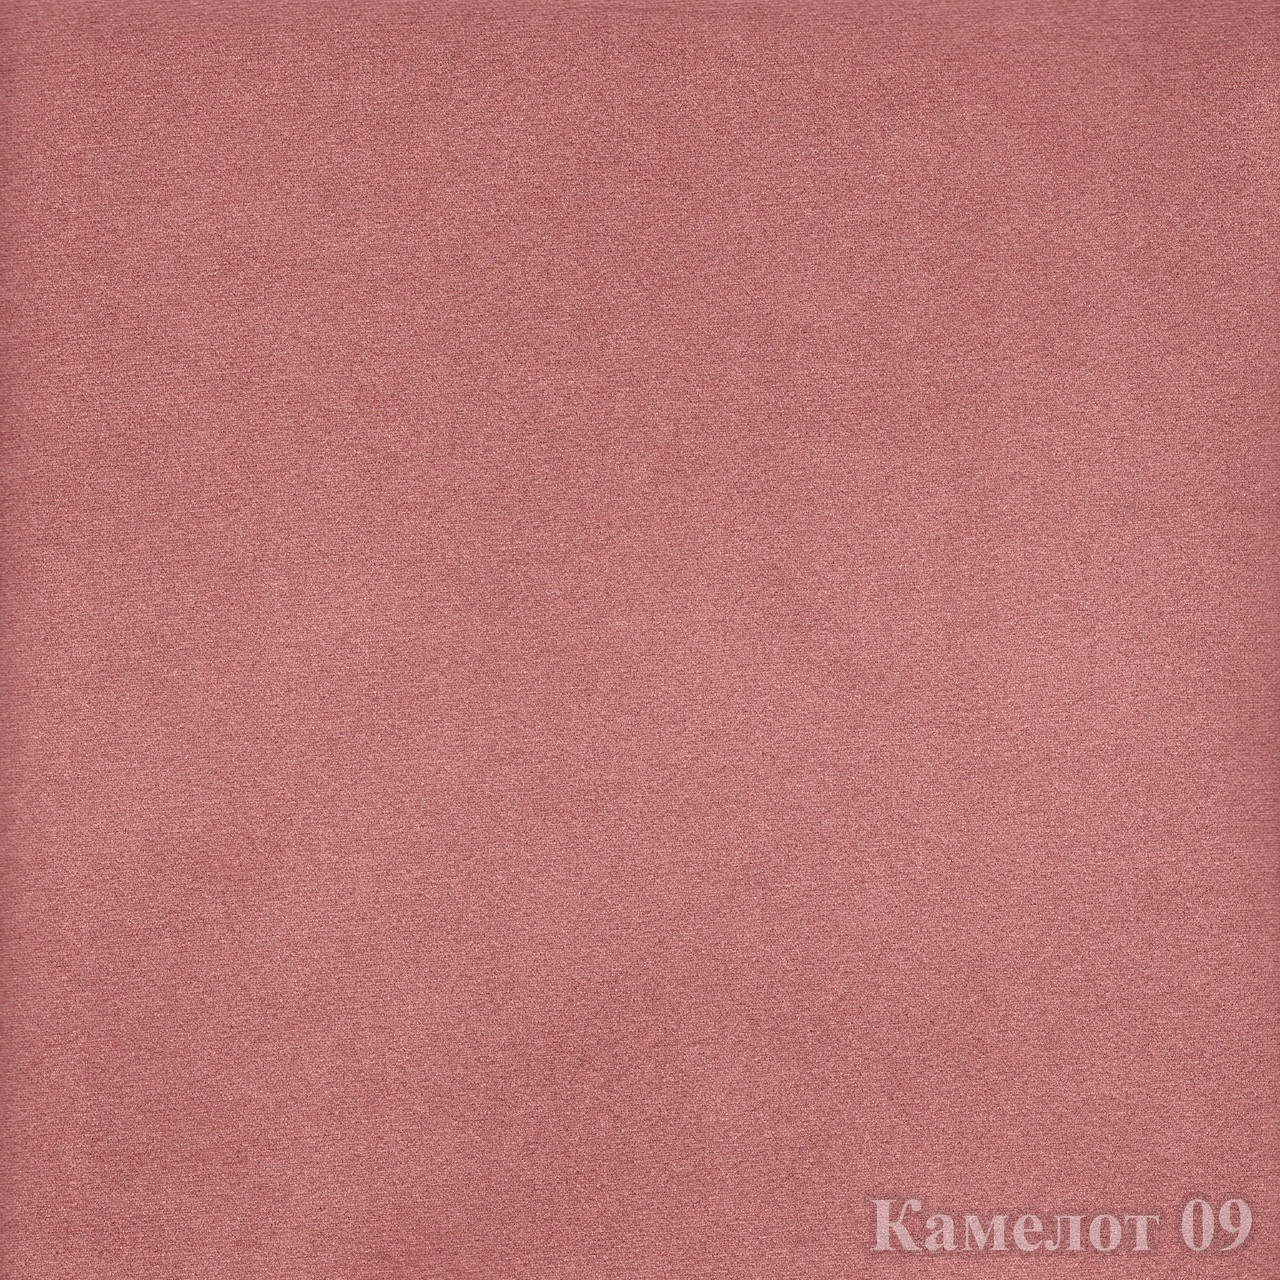 Меблева тканина велюр Камелот 09 (Мебтекс)